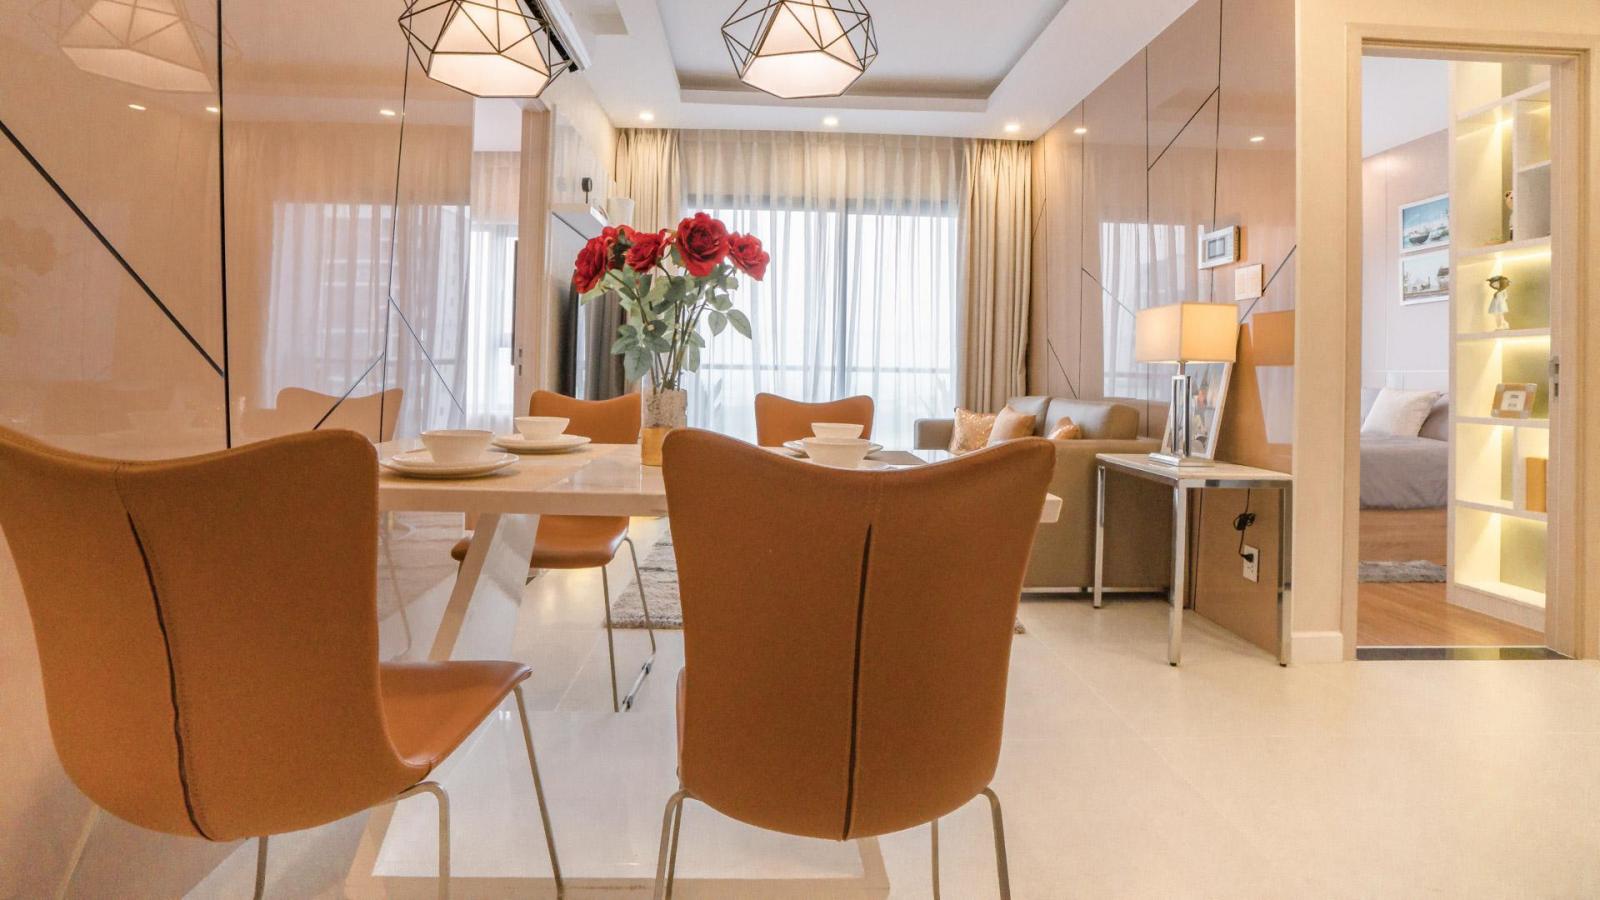 Cho thuê căn hộ Cantavil quận 2, 98m2, 3PN giá tốt nhất thị trường 16 triệu/th, nội thất cao cấp